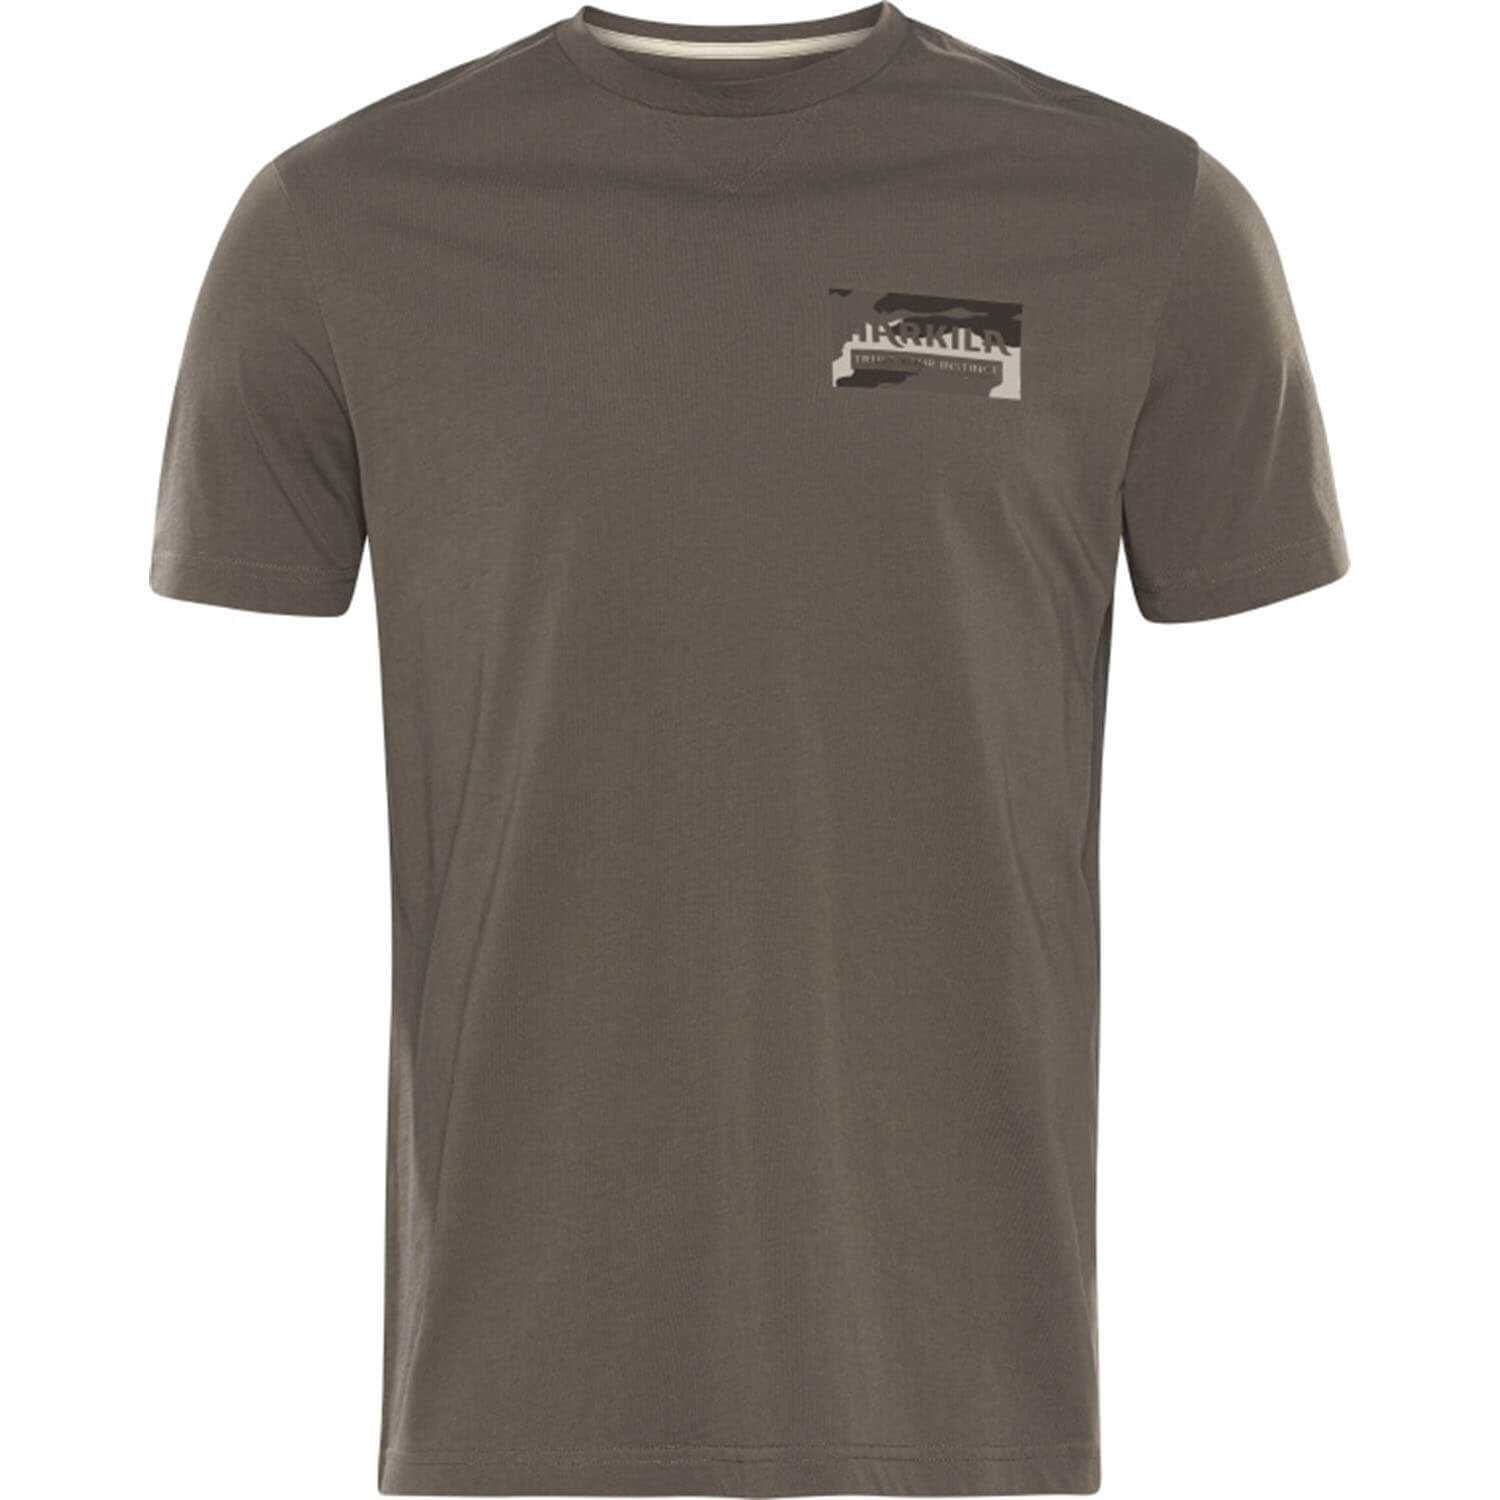  Härkila Kern T-shirt (bruin) - Jachtshirts